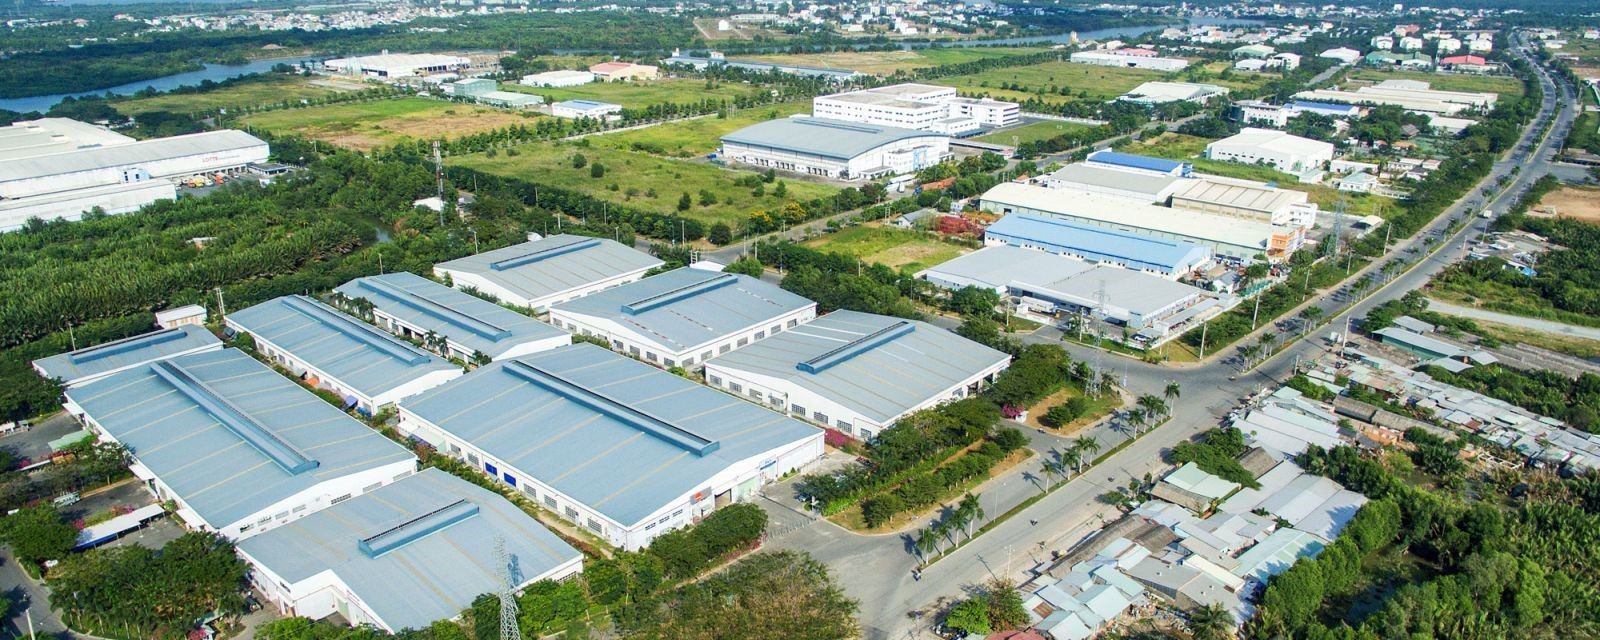 Khu công nghiệp sinh thái sở hữu nhiều lợi ích về mặt kinh tế cho các doanh nghiệp tham gia sản xuất (Hình ảnh: Khu công nghiệp Nhơn Trạch 2 - Đồng Nai)